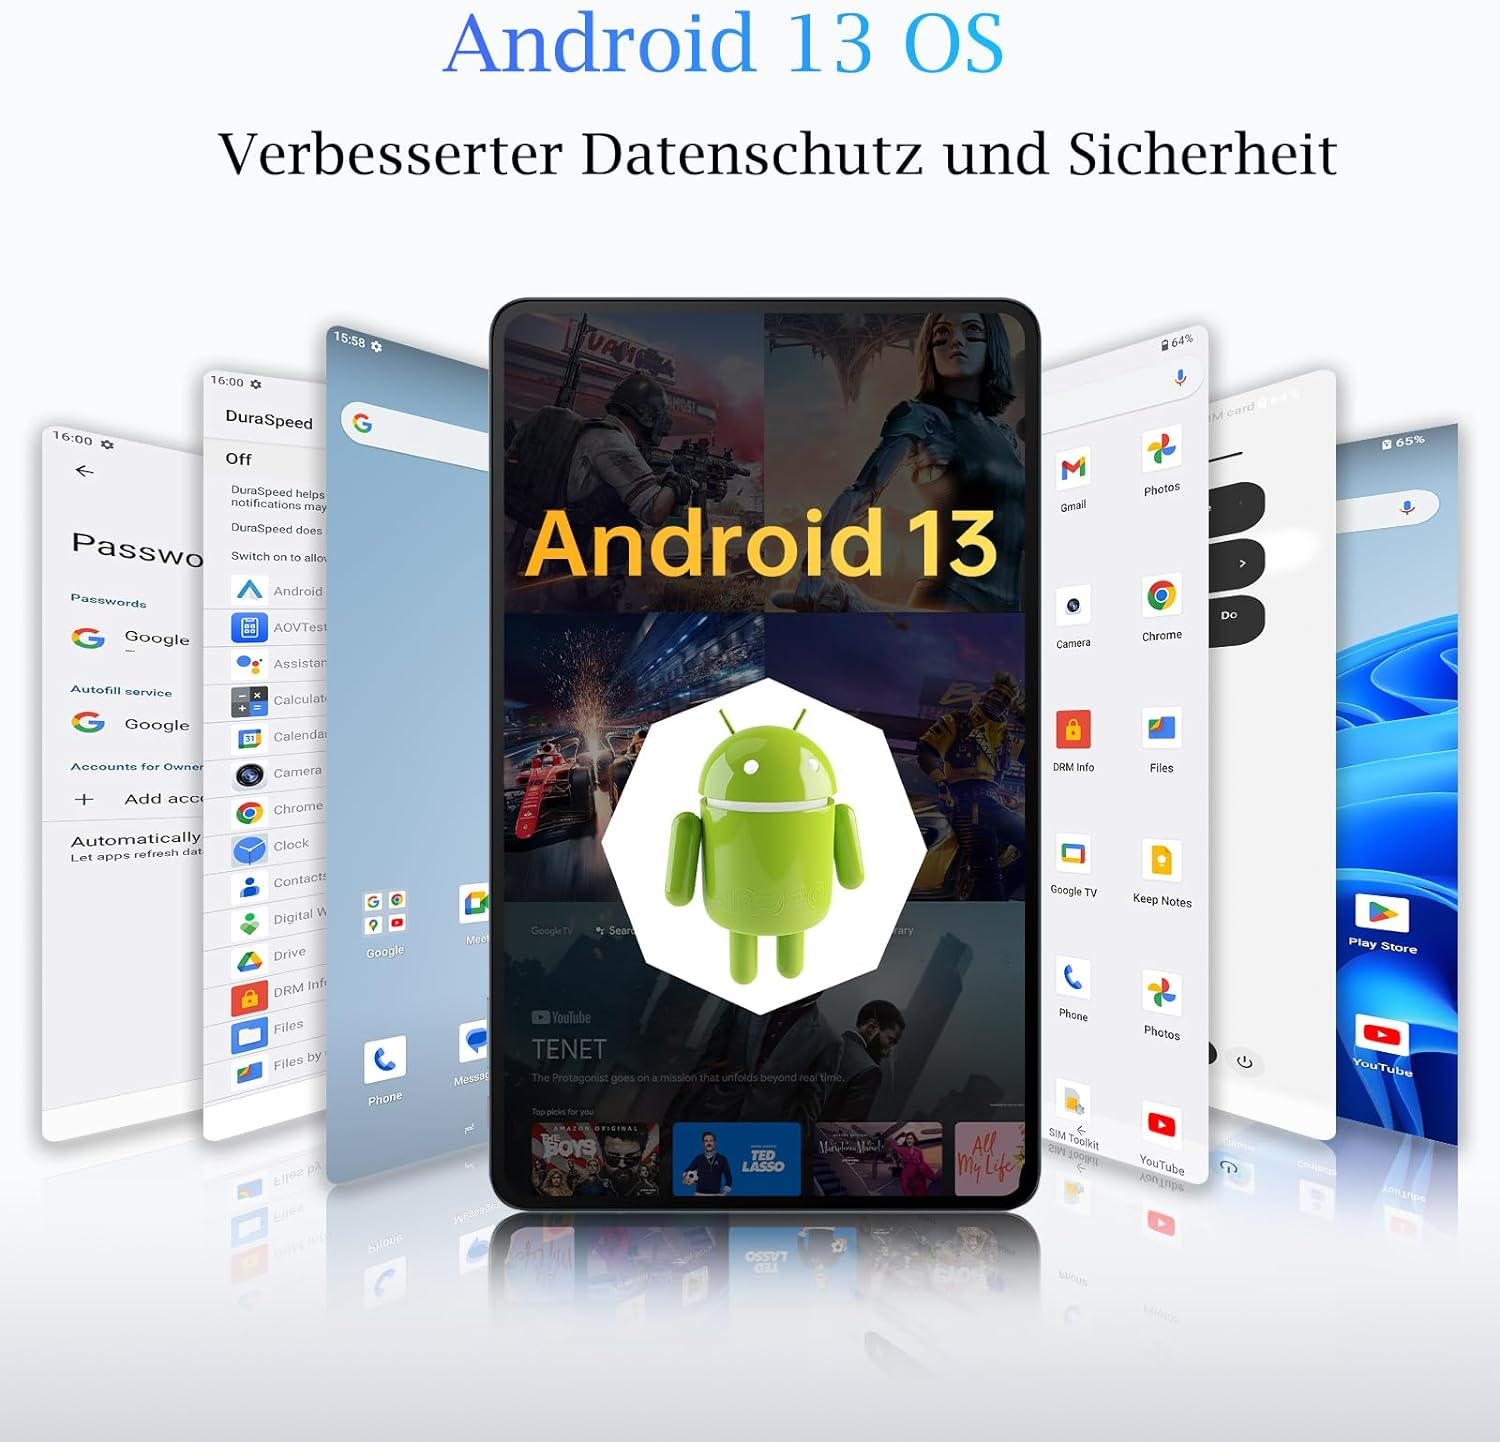 OUKITEL OT5 36GB+256GB/2TB 11000mAh Android GB, 12 256 Grau Zoll, Tablet, 13